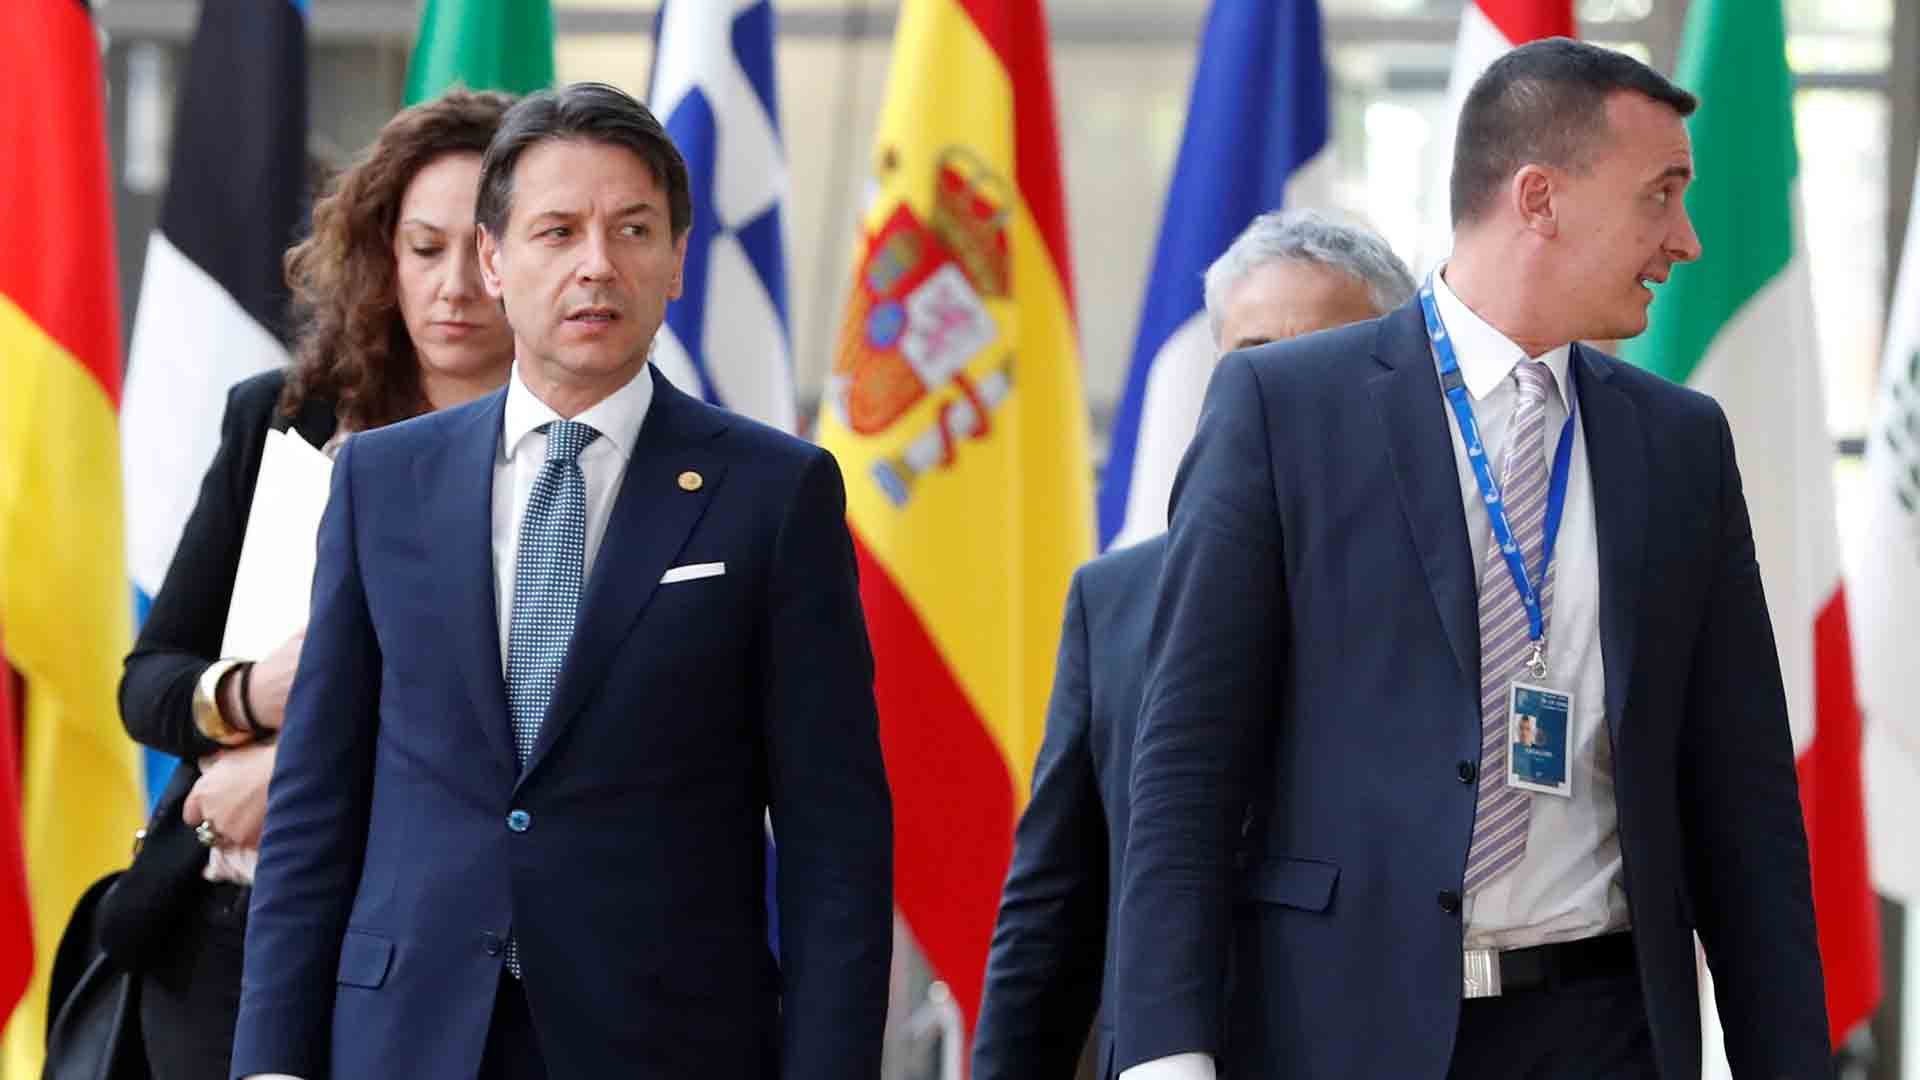 Italia bloquea las conclusiones de la cumbre europea hasta que haya un acuerdo sobre migración